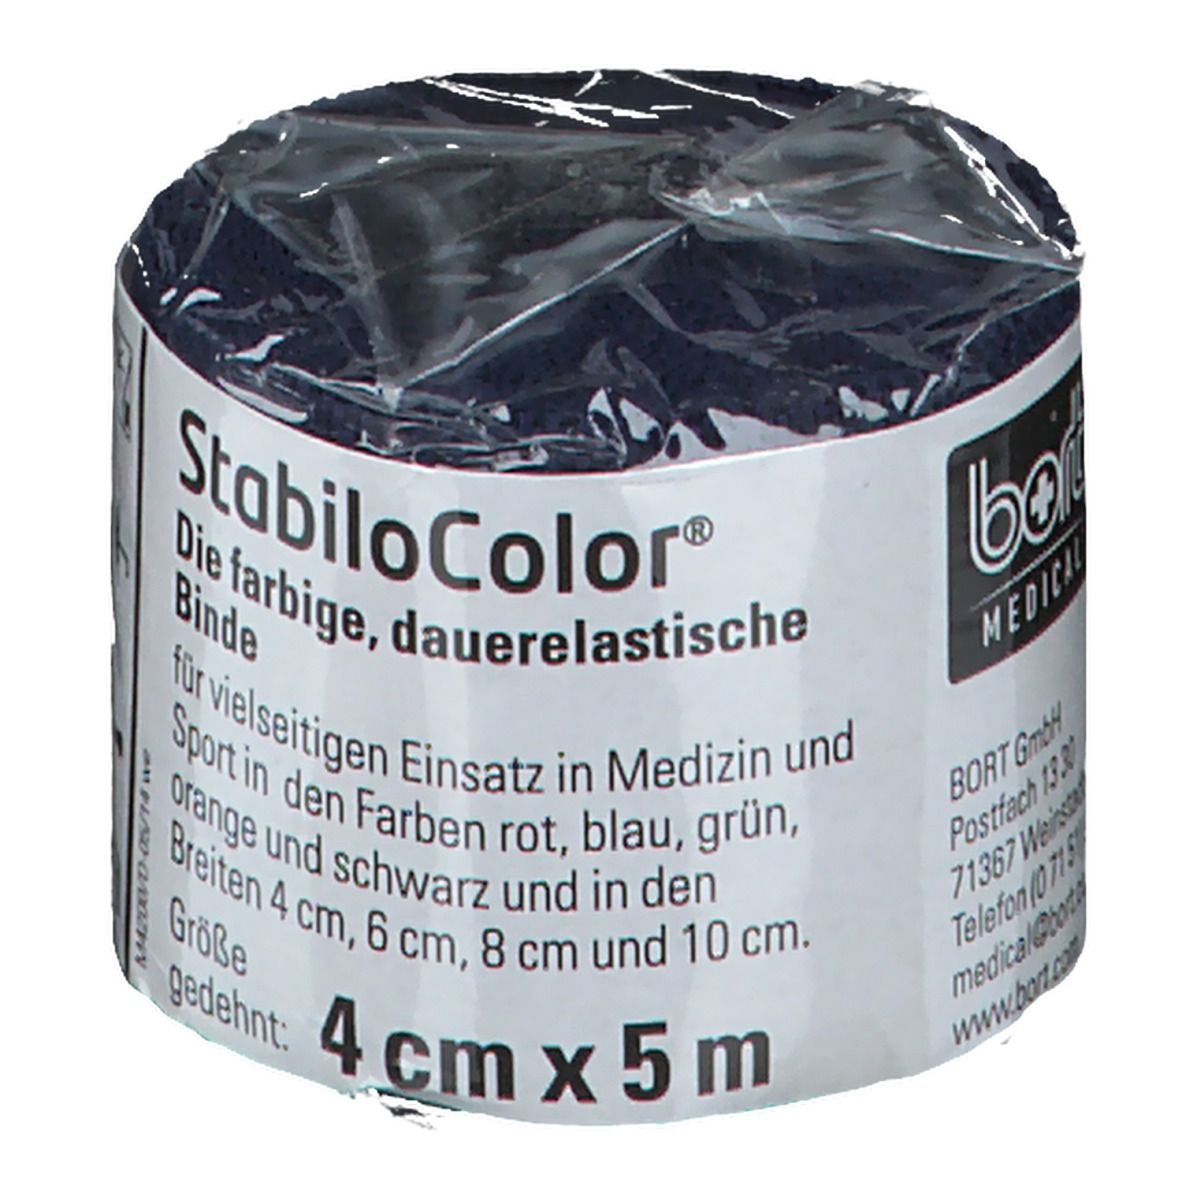 BORT StabiloColor® Binde 4 cm x 5 m blau